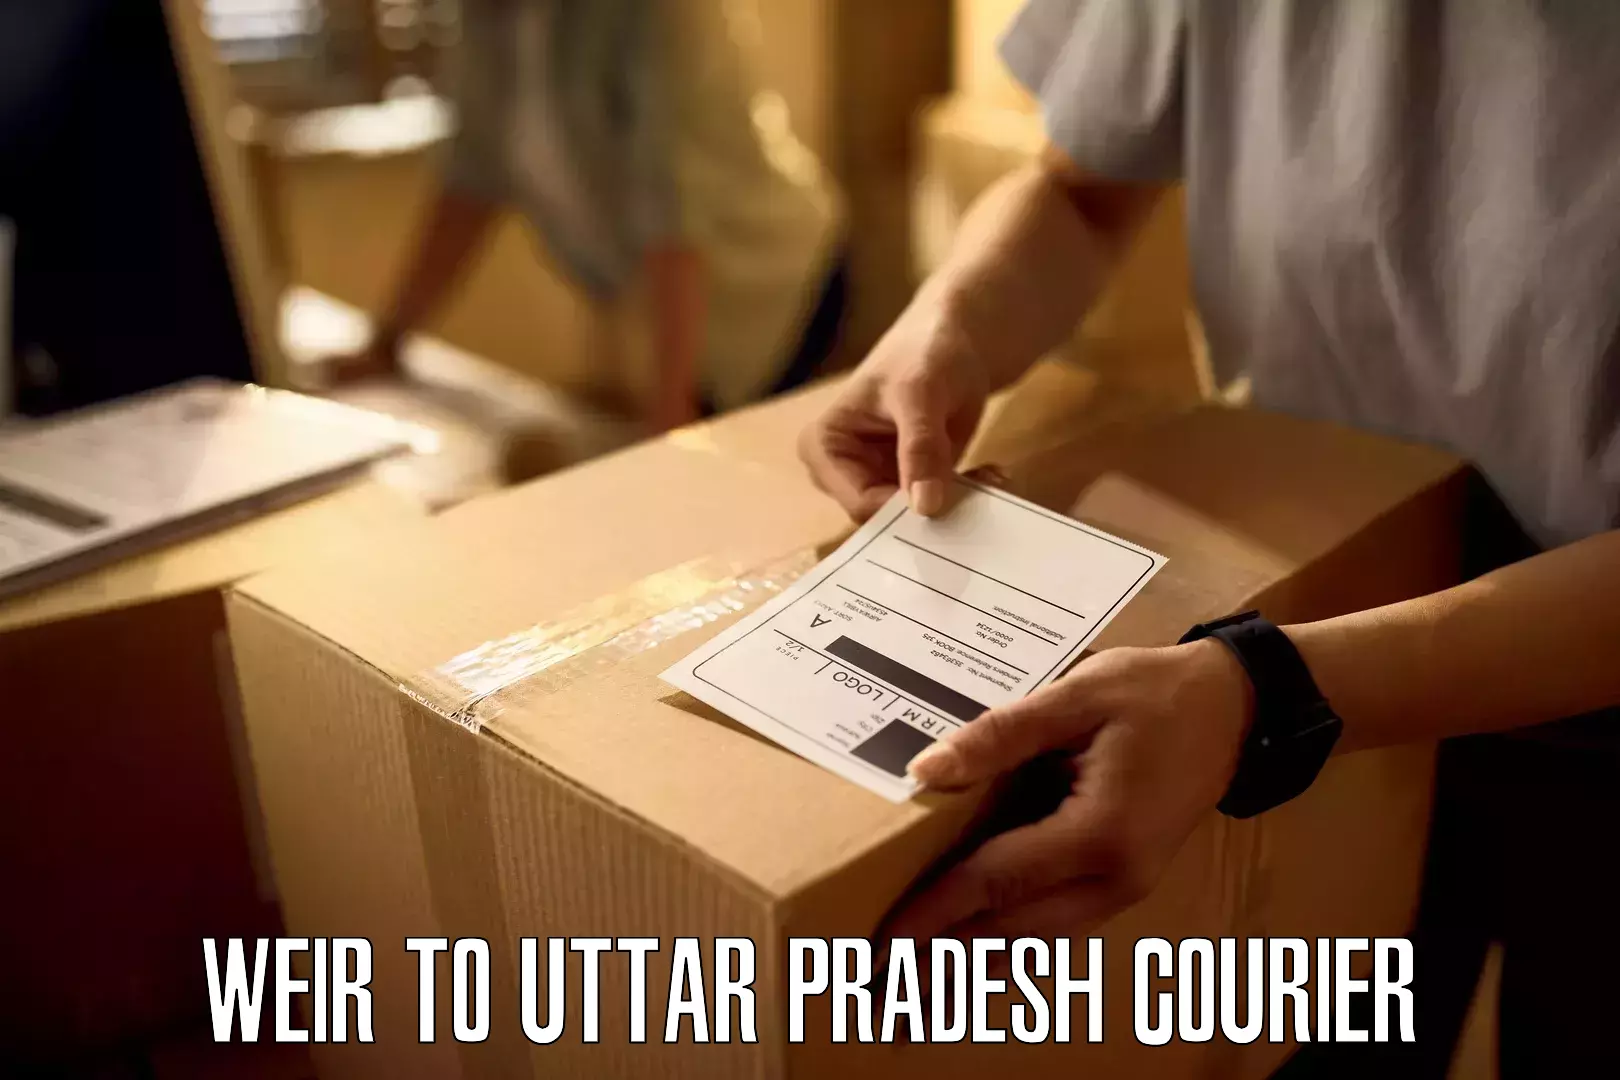 24/7 courier service Weir to Uttar Pradesh